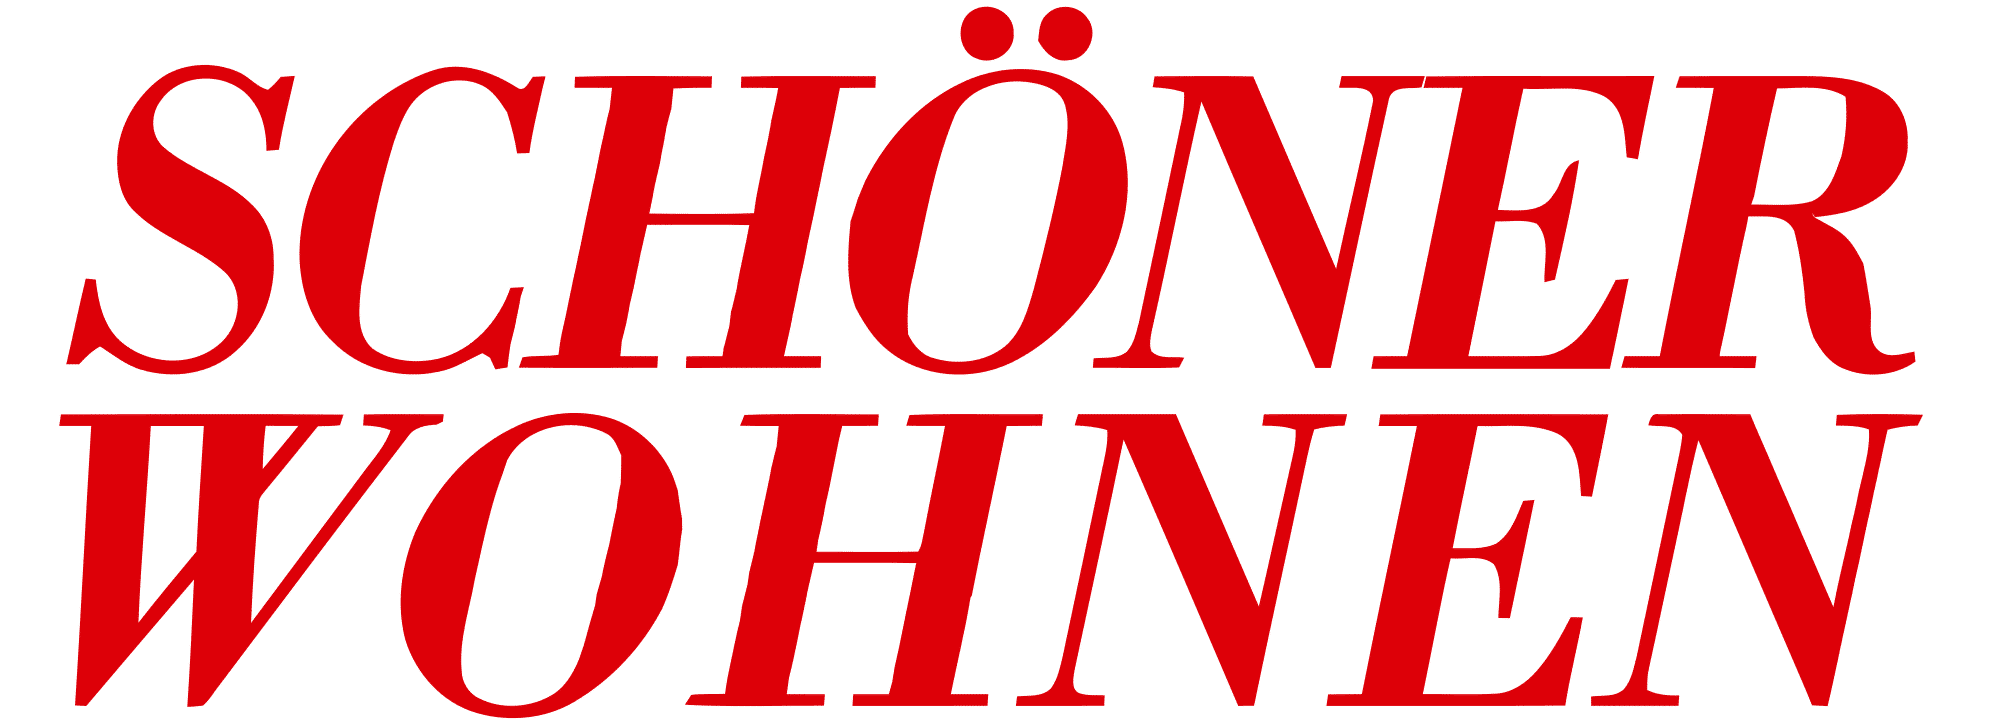 LA MAISON hotel Saarlouis - Schoener Wohnen Logo - presse